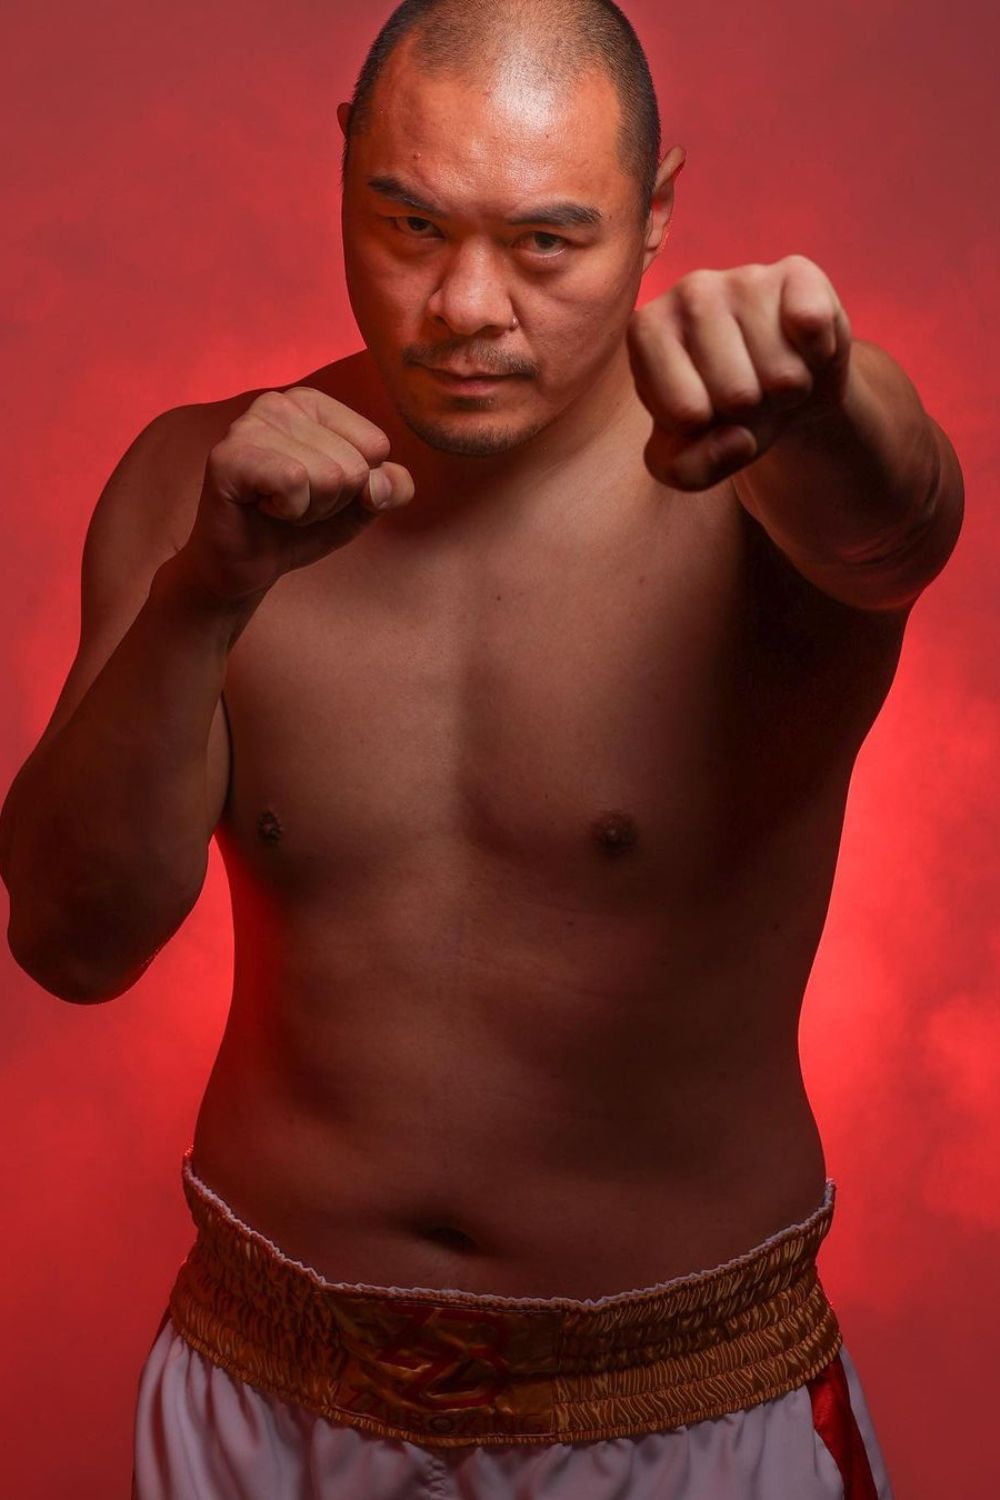 Chinese Boxer Zhang Zhilei